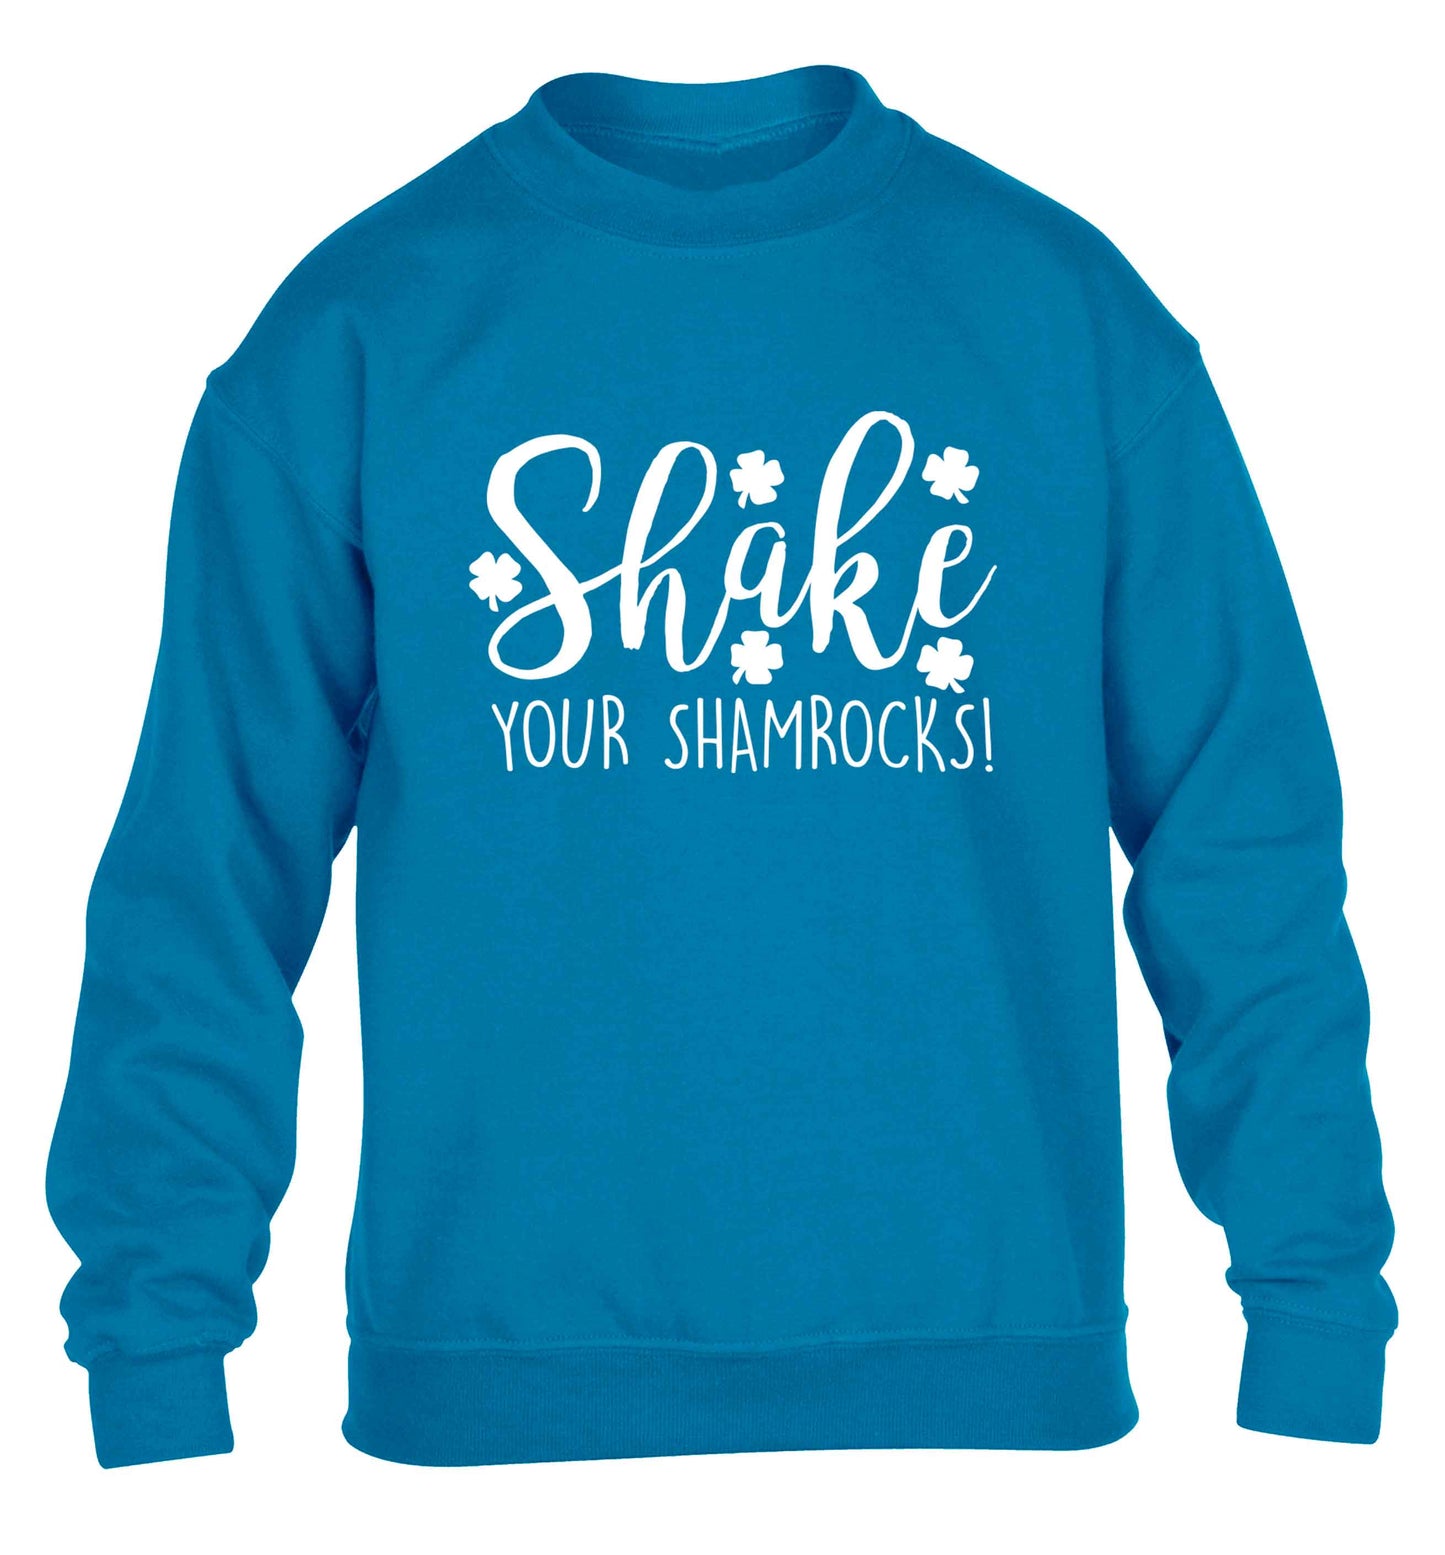 Shake your shamrocks children's blue sweater 12-13 Years